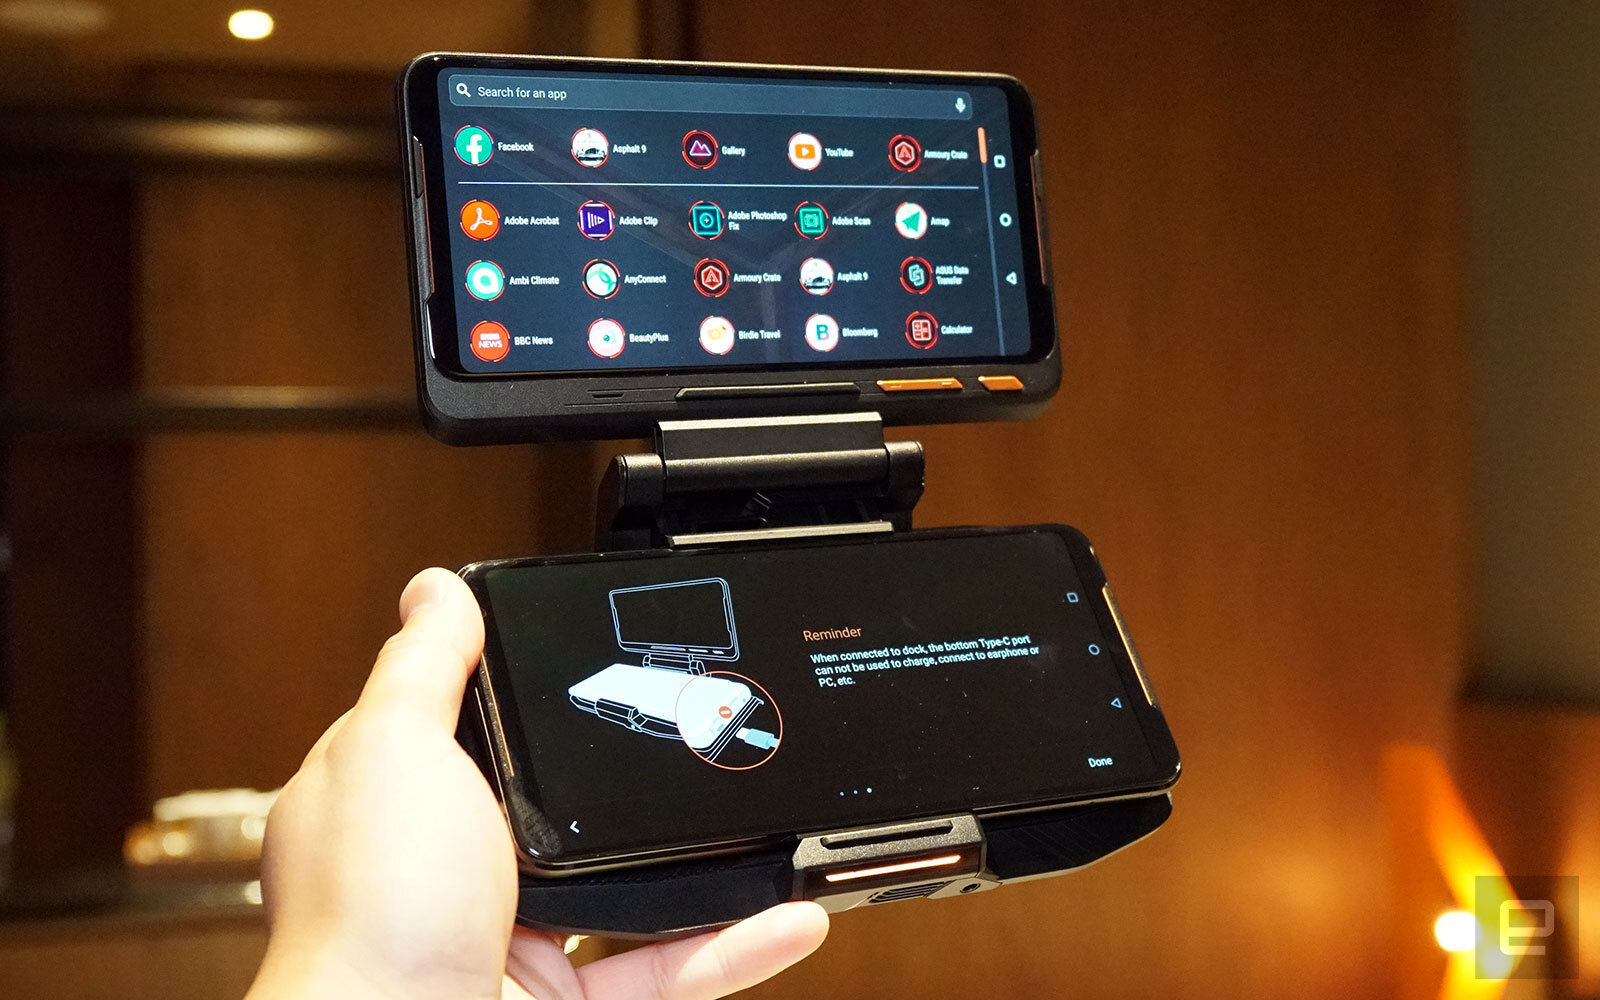 ASUS ROG Phone II: Chip Snapdragon 855+, màn hình
120Hz, pin 6000 mAh, RAM từ 8GB, giá chỉ từ 12 triệu